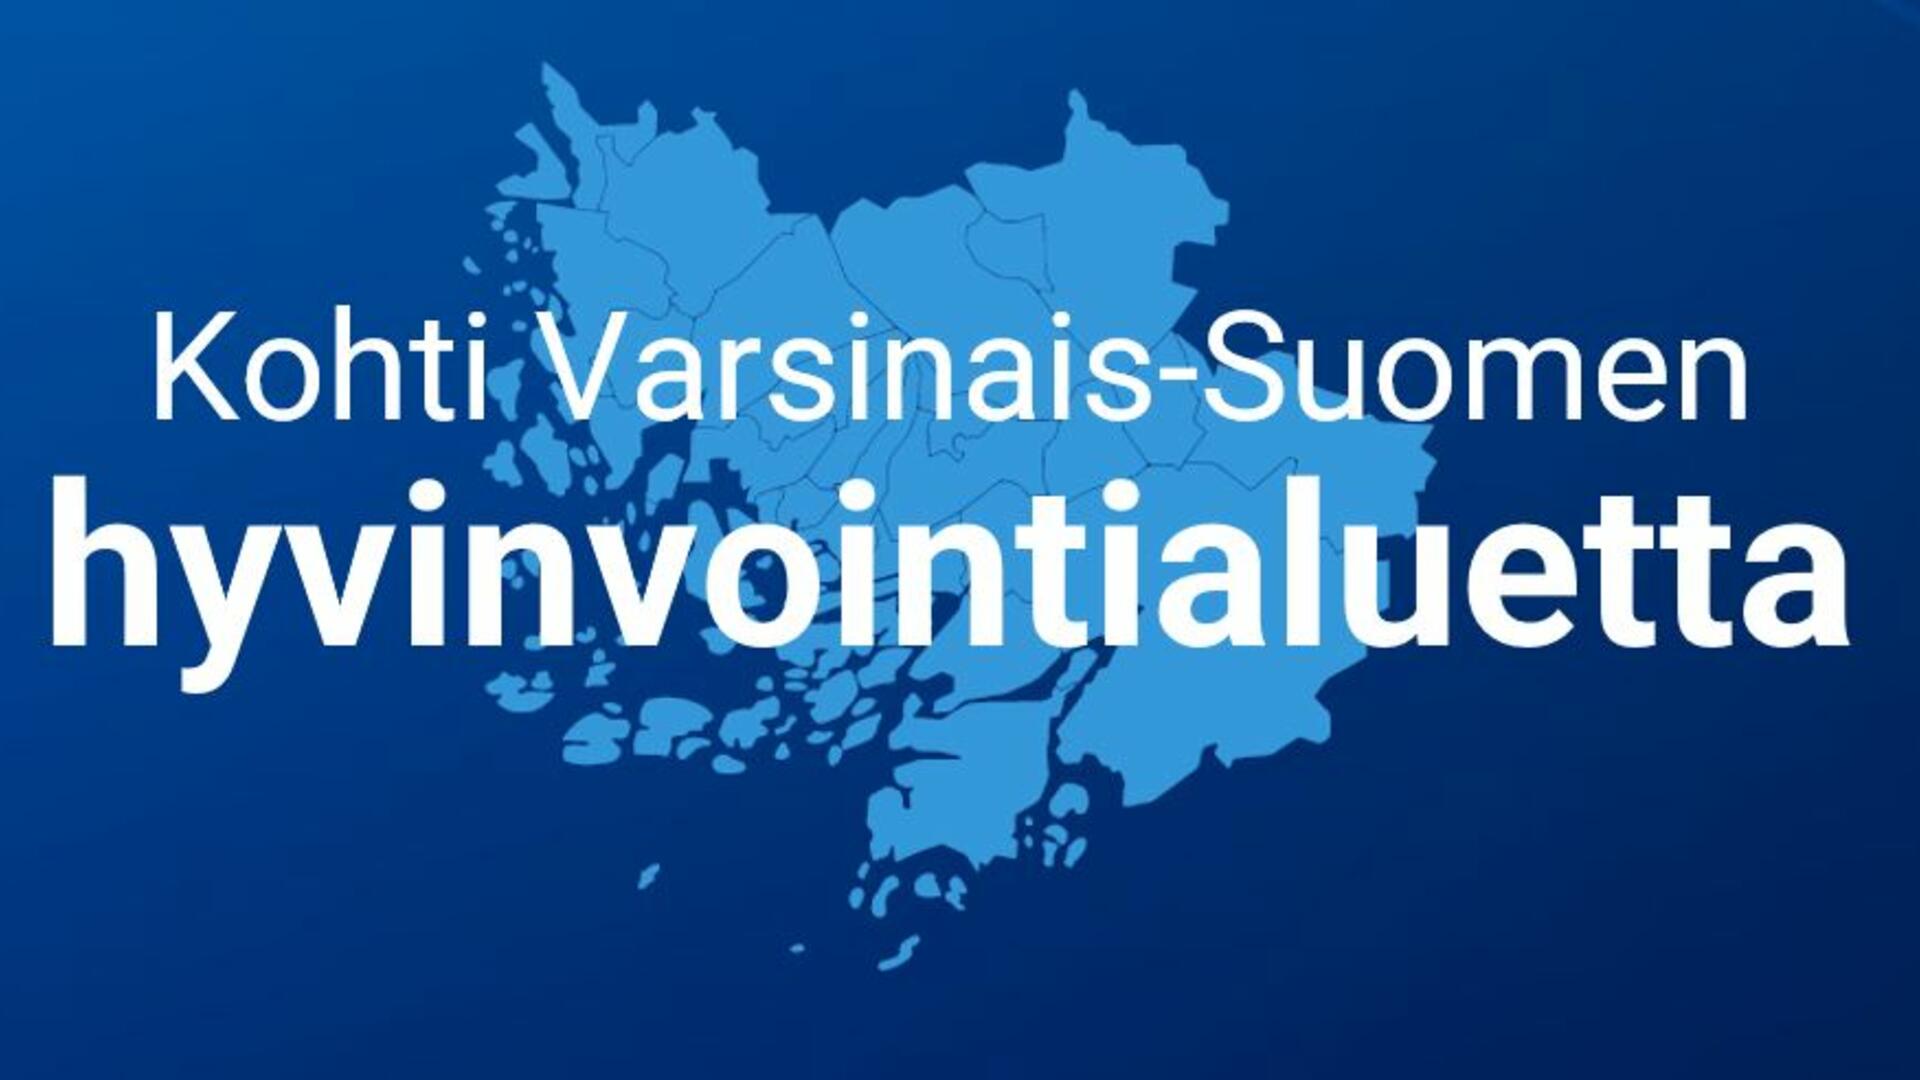 Varsinais-Suomen kartta, jonka päällä teksti Kohti Varsinais-Suomen hvyinvointialuetta